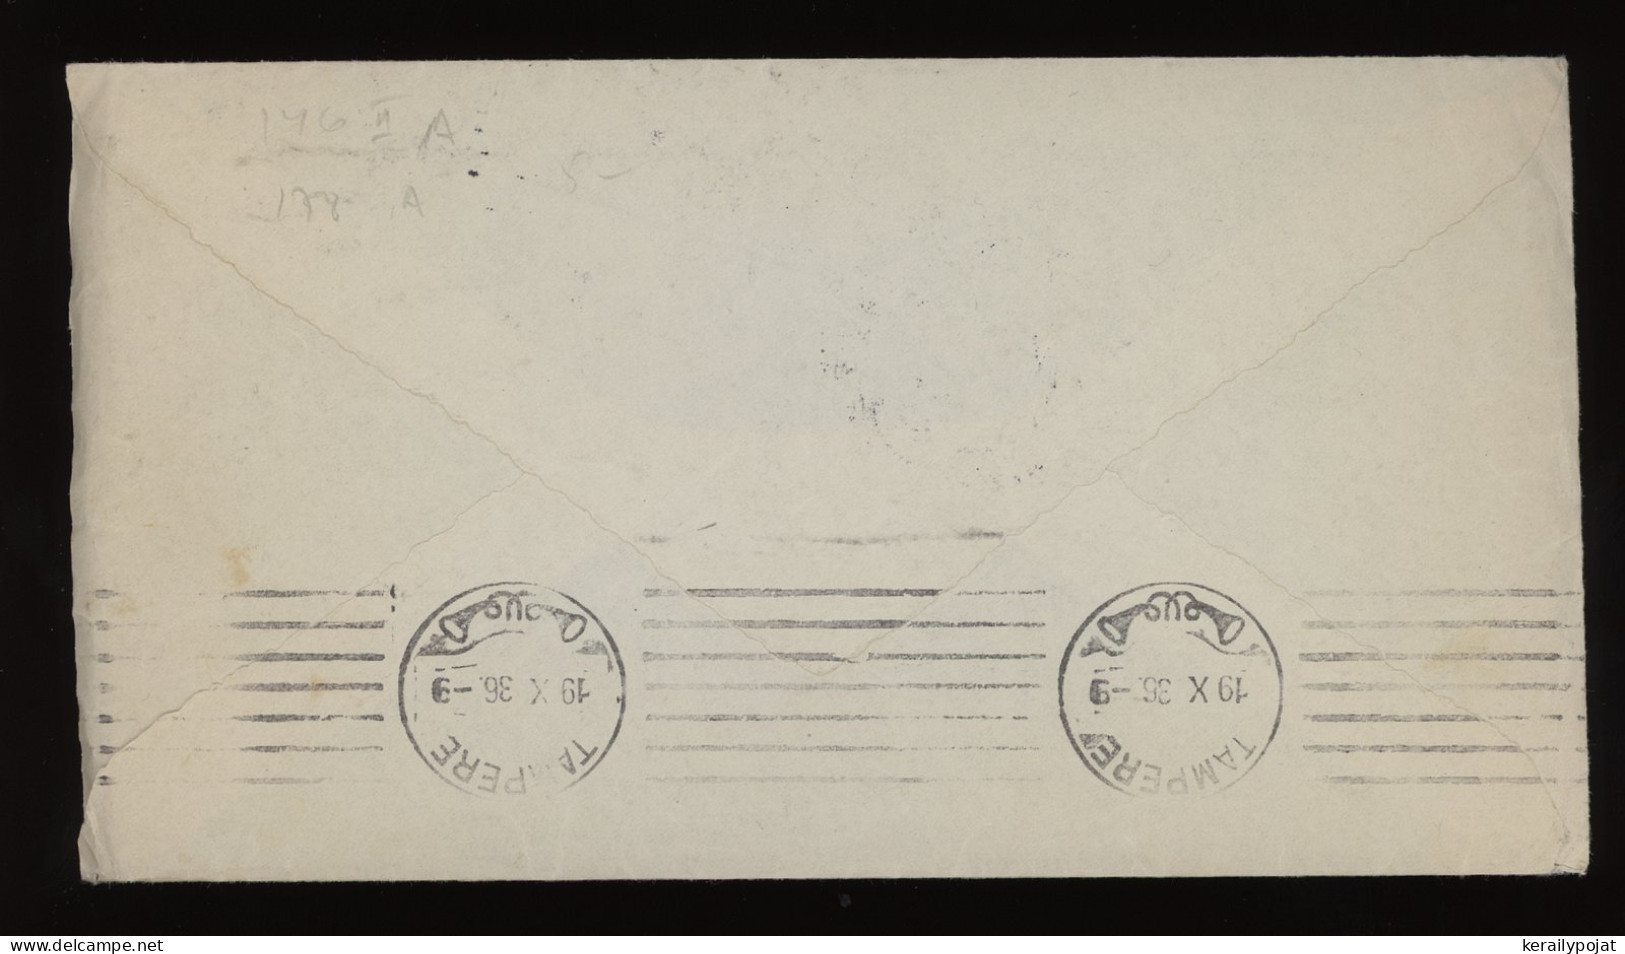 Sweden 1936 Stockholm Air Mail Cover To Finland__(12251) - Cartas & Documentos